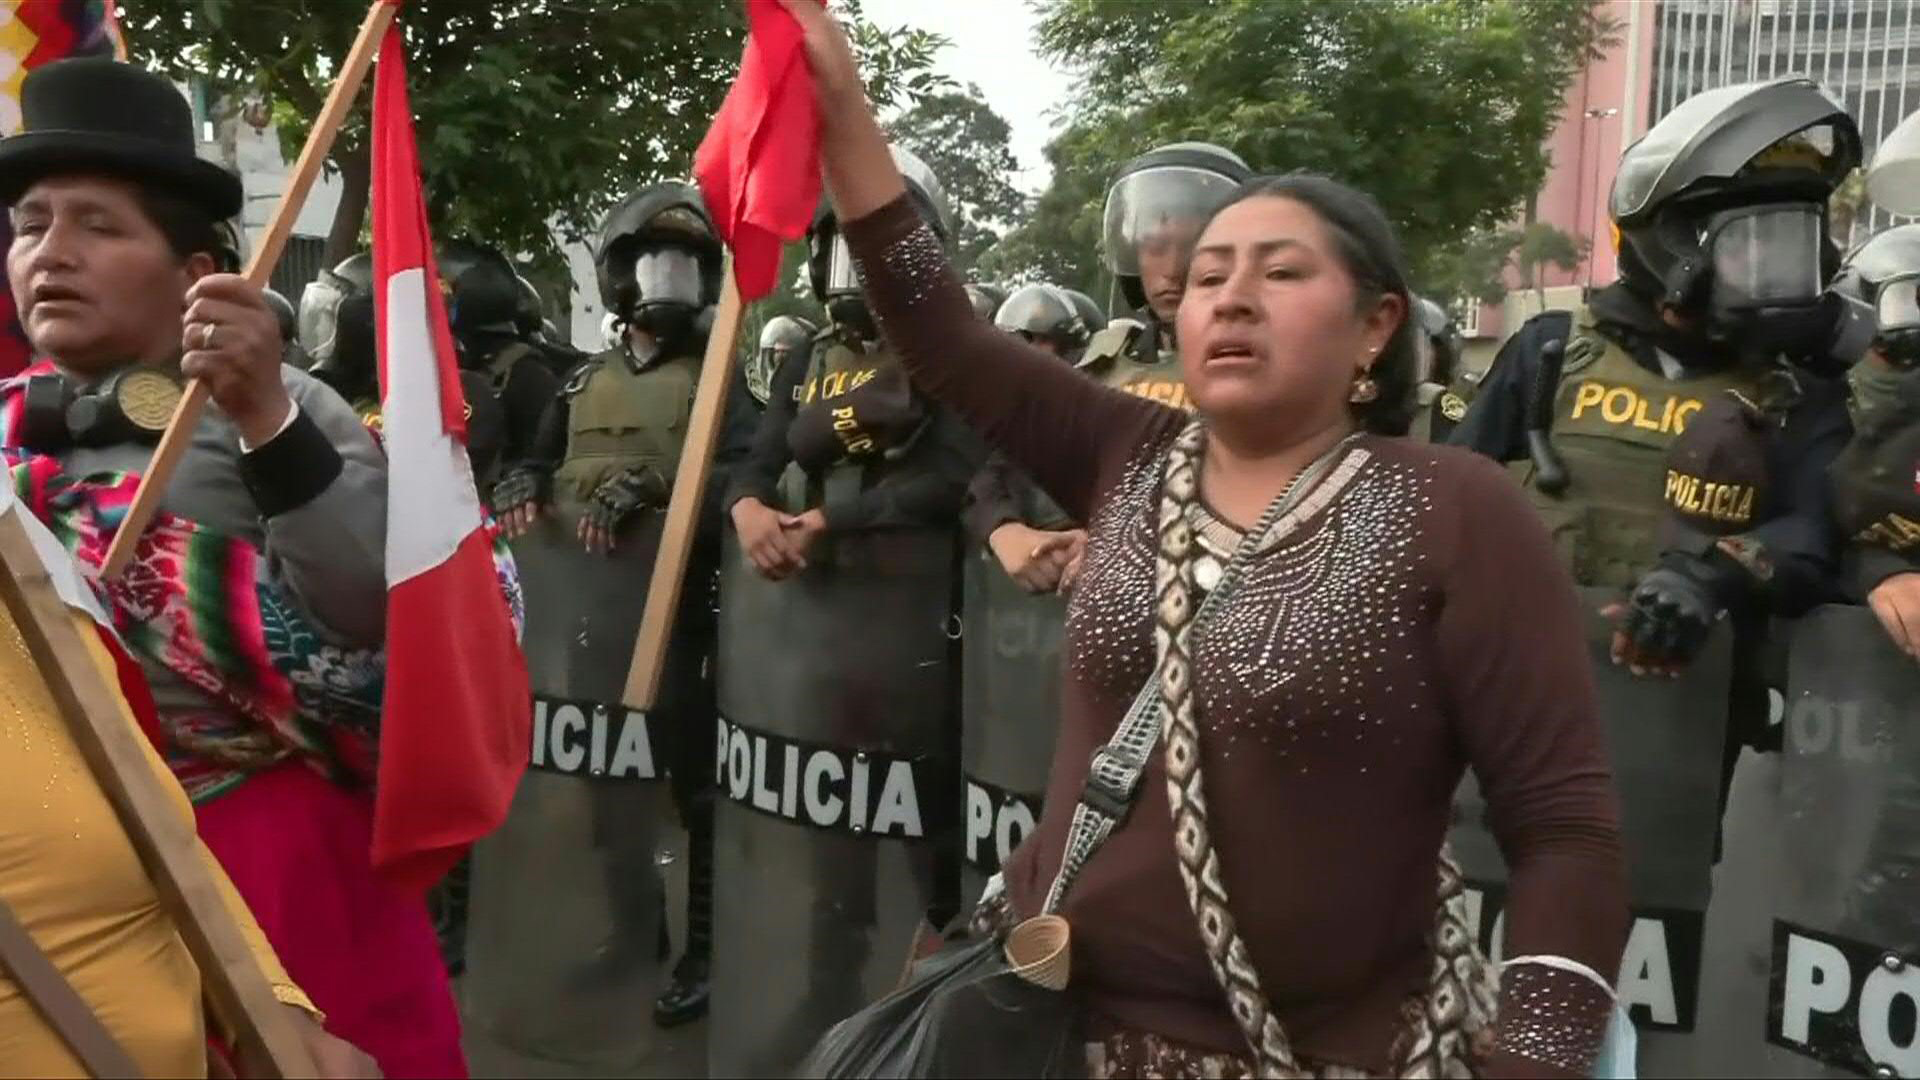 Los disturbios en Perú que ocasionaron casi 50 muertos